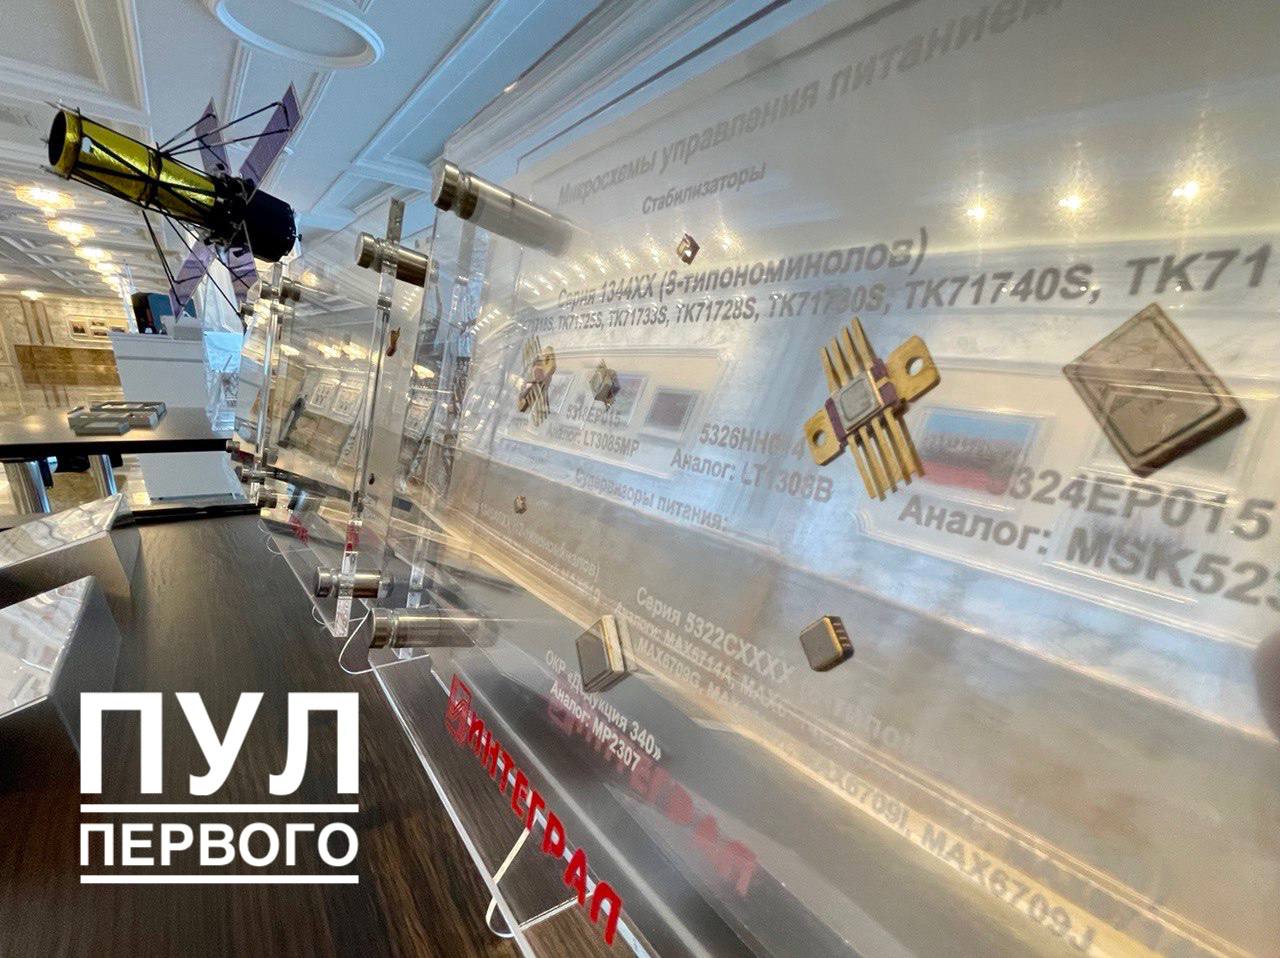 Лукашенко хочет перевести дата-центры, банковский процессинг и видеонаблюдение на "собственные решения"